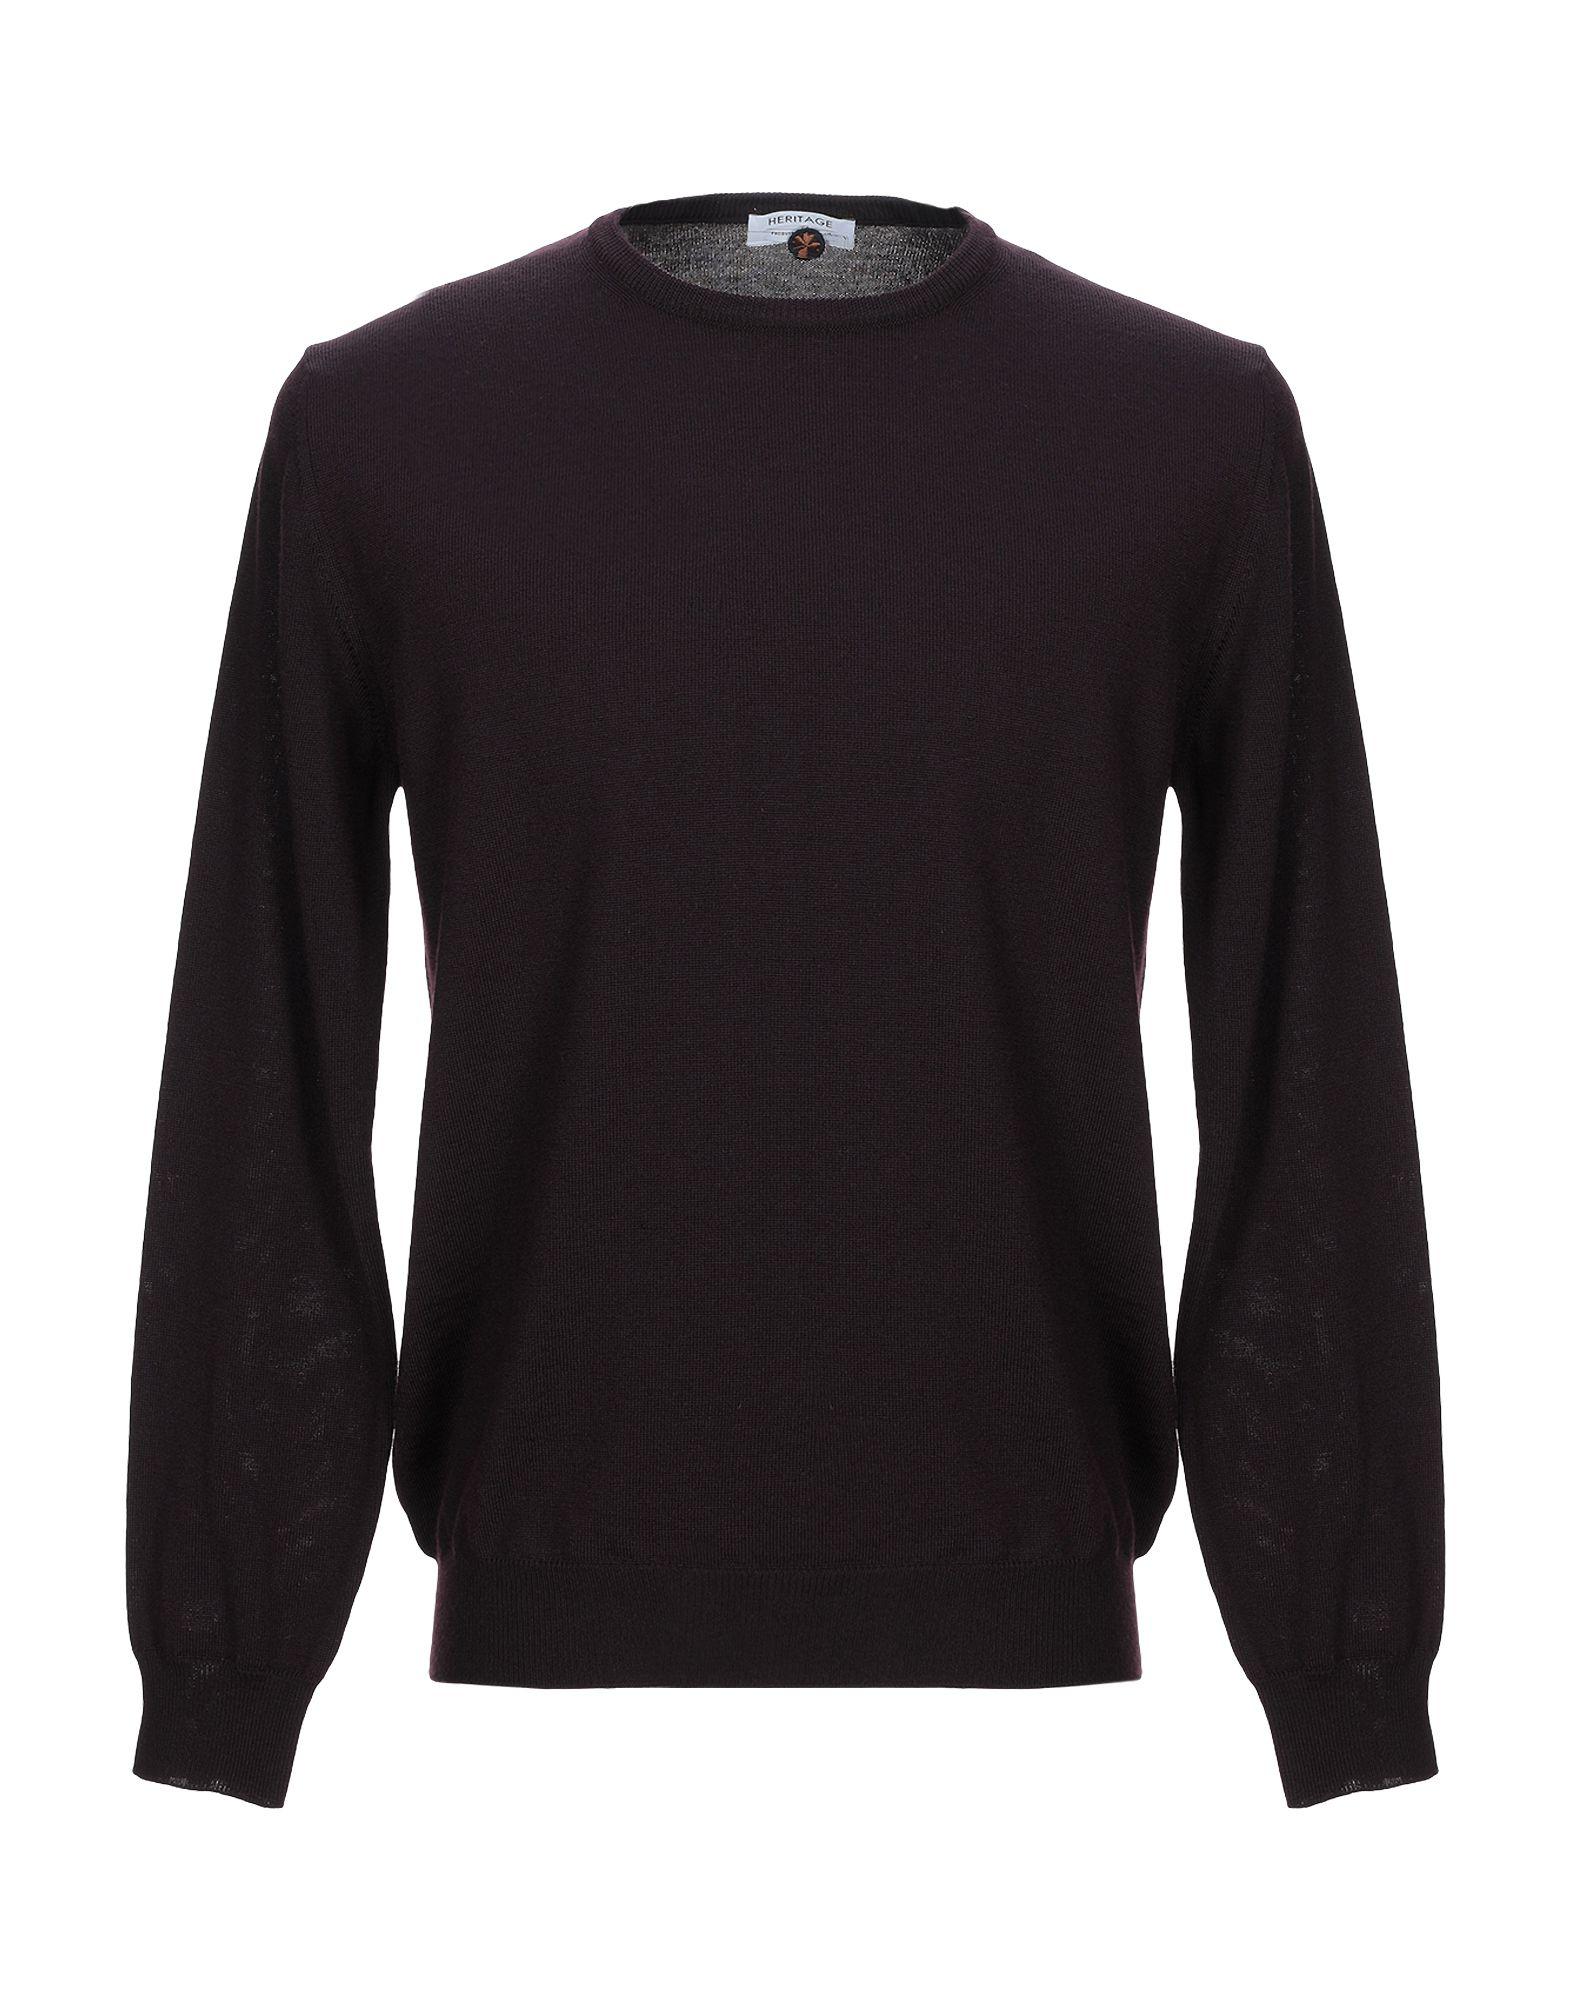 Heritage Wool Sweater in Dark Purple (Purple) for Men - Lyst